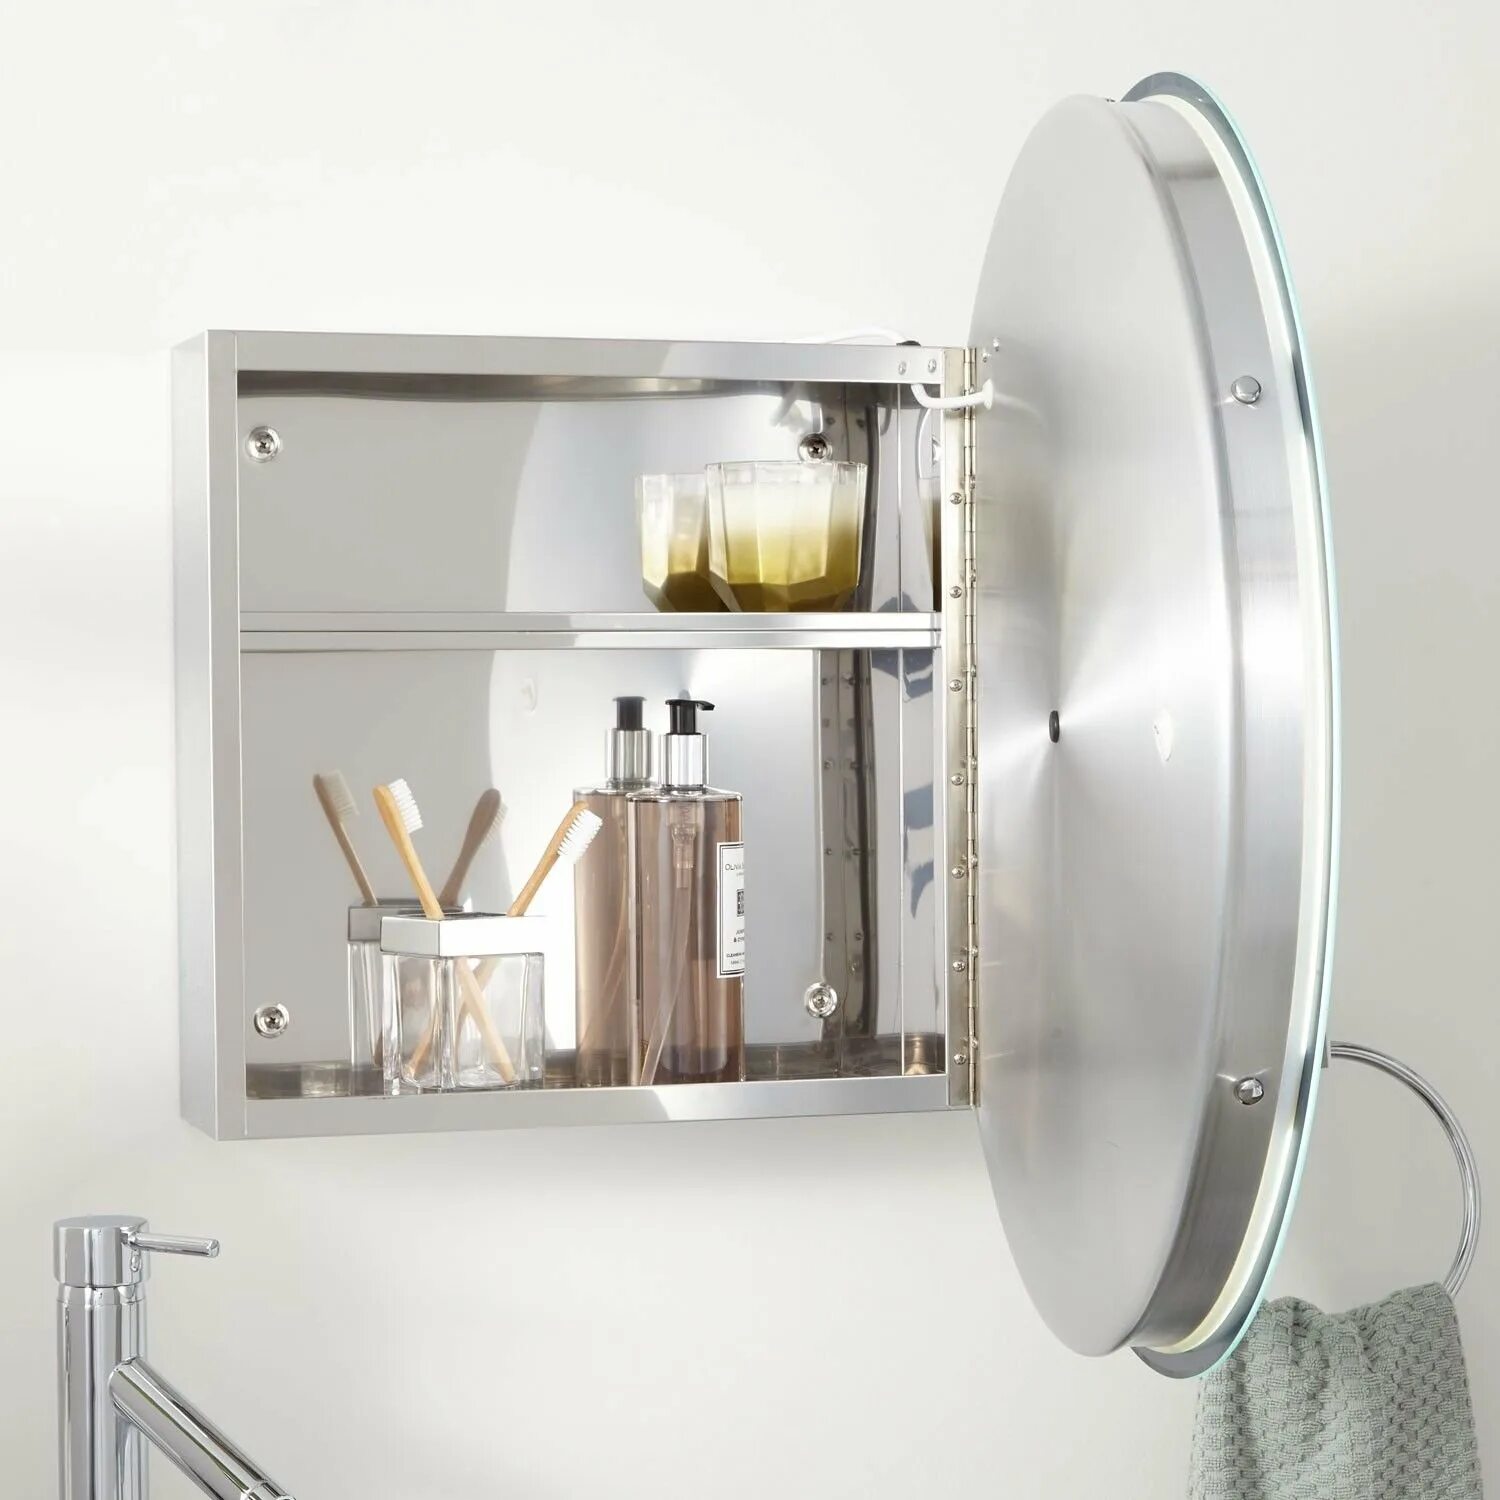 Зеркальный круглый шкафчик с подсветкой ASM-807 - Rotpunkt. Овальный зеркальный шкаф ASM 810. ASM-801 - Rotpunkt. Круглое зеркало с шкафчиком в ванную. Зеркало в ванную с подсветкой и полками